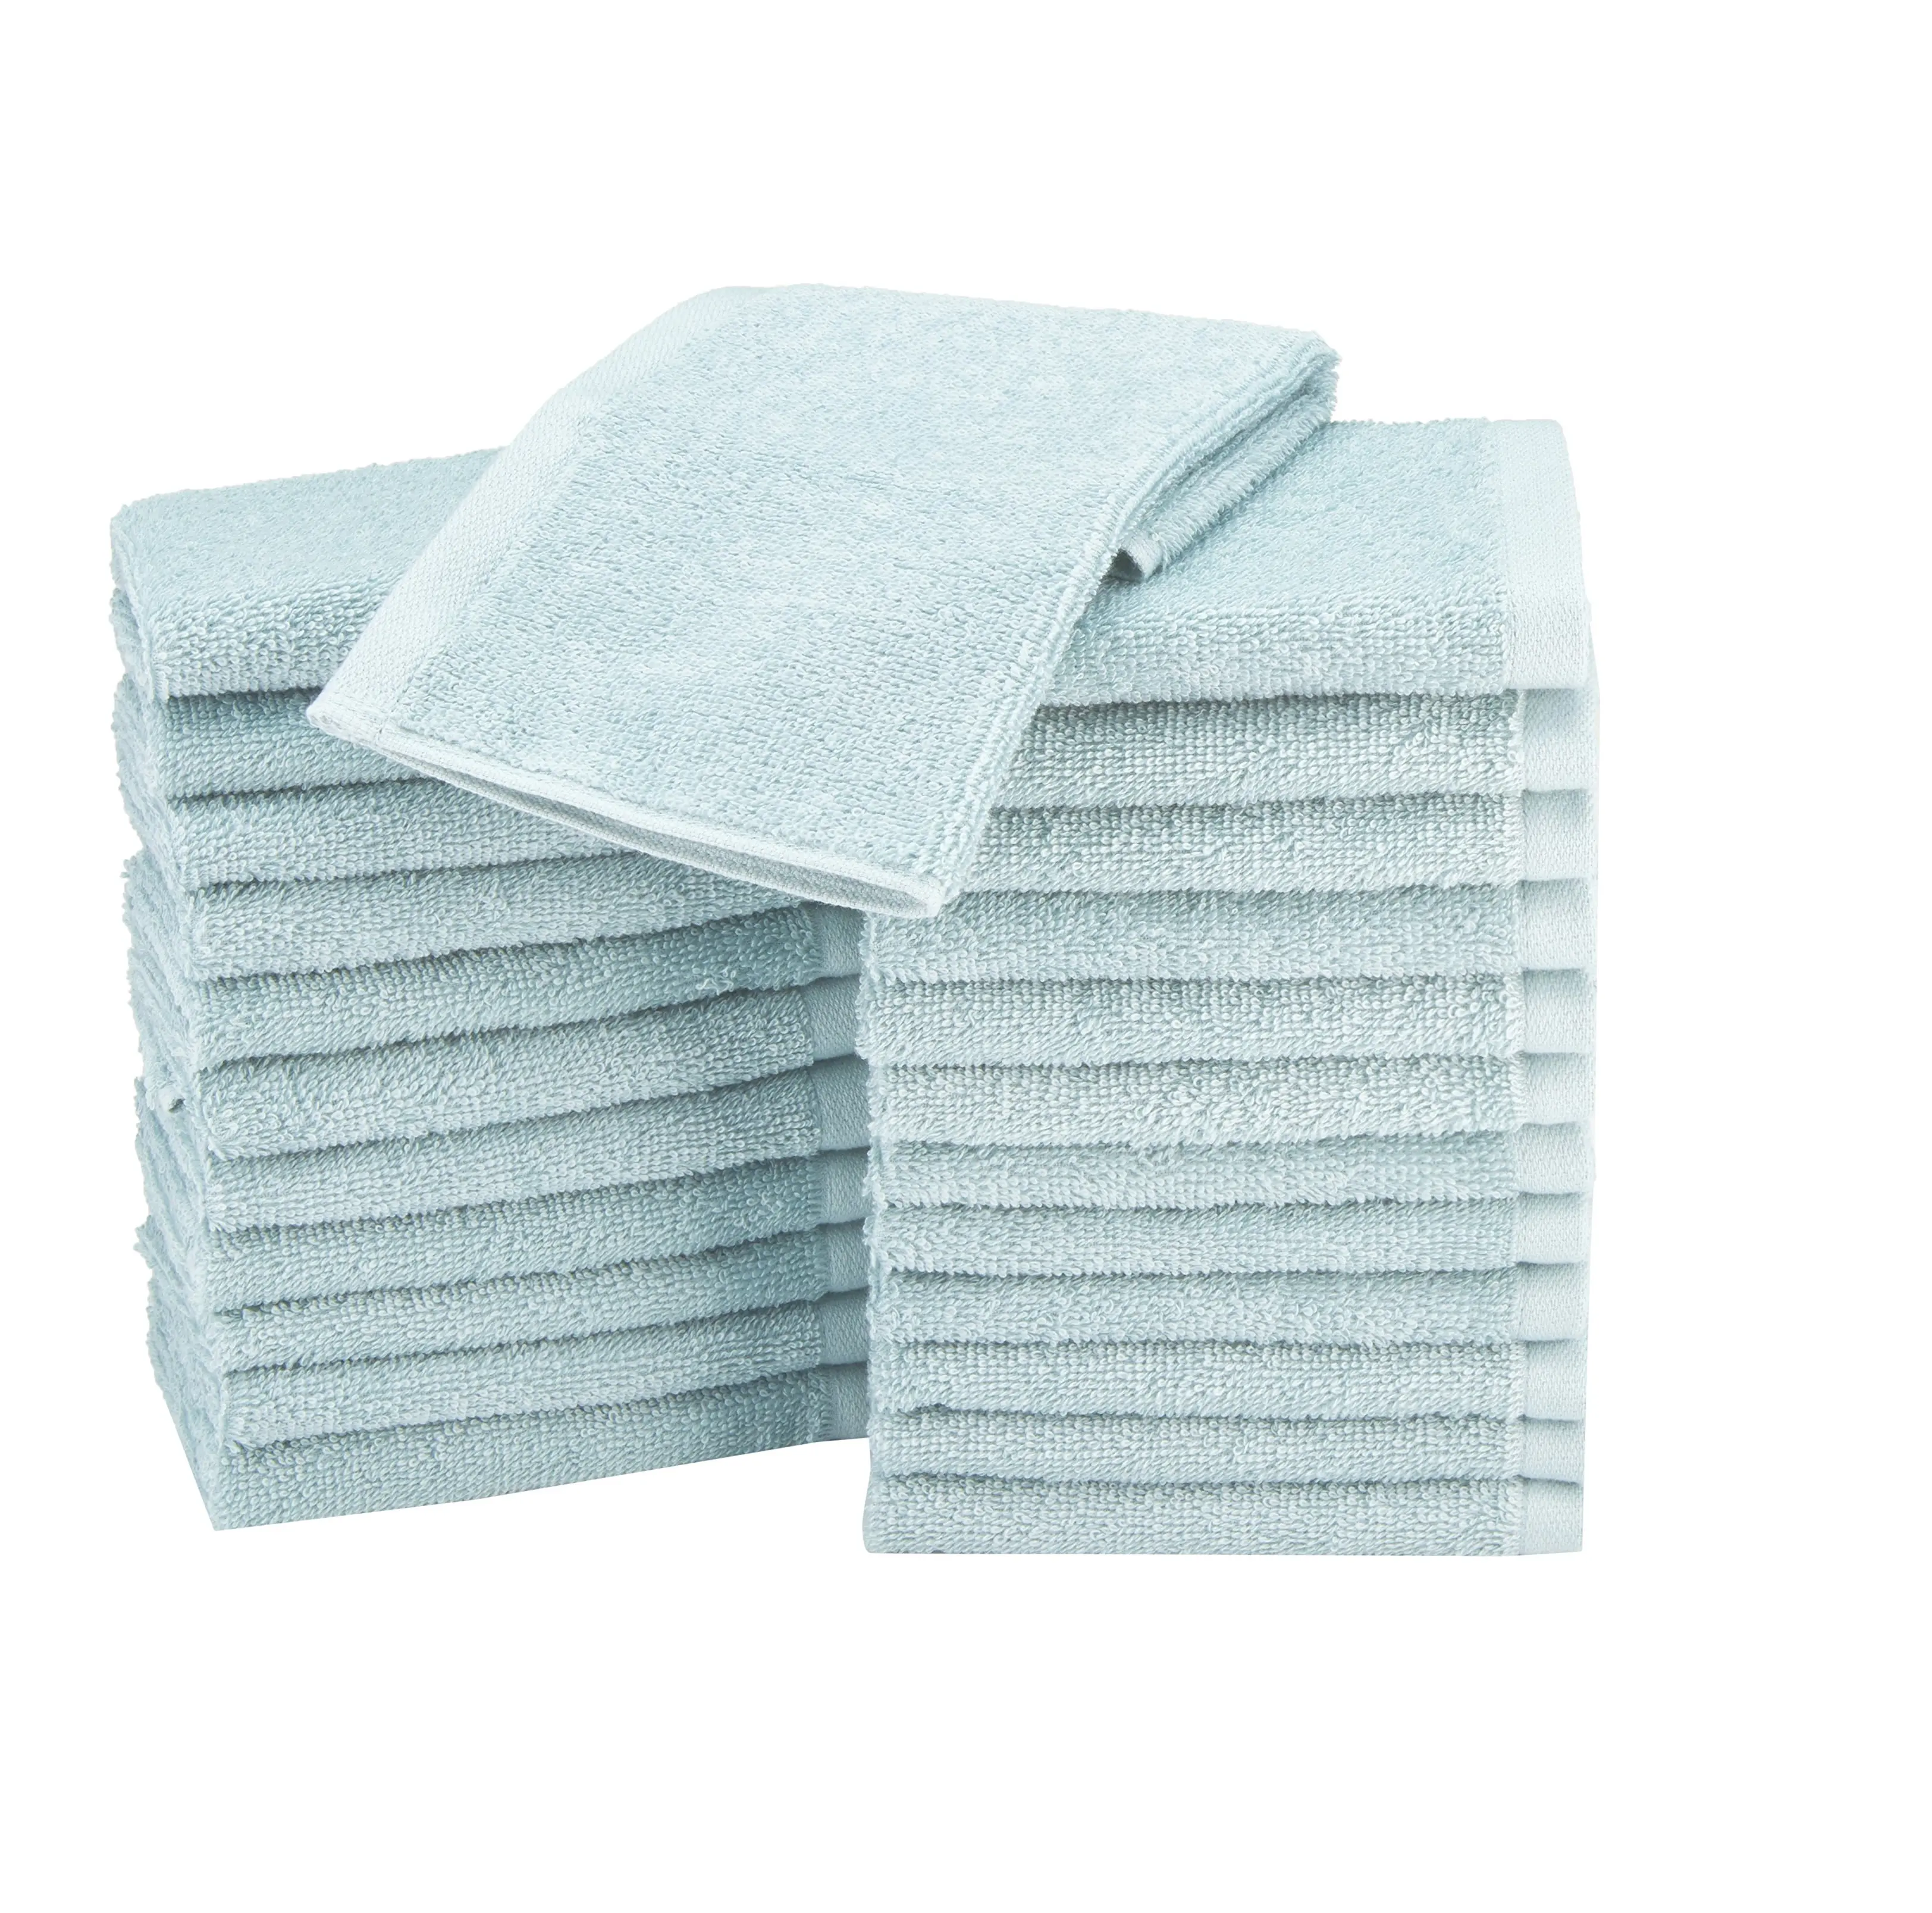 गुणवत्ता होटल स्पा स्नान तौलिया की पहली पसंद को थोक, 100% कपास आरामदायक तौलिए उच्च गुणवत्ता वाली बनावट